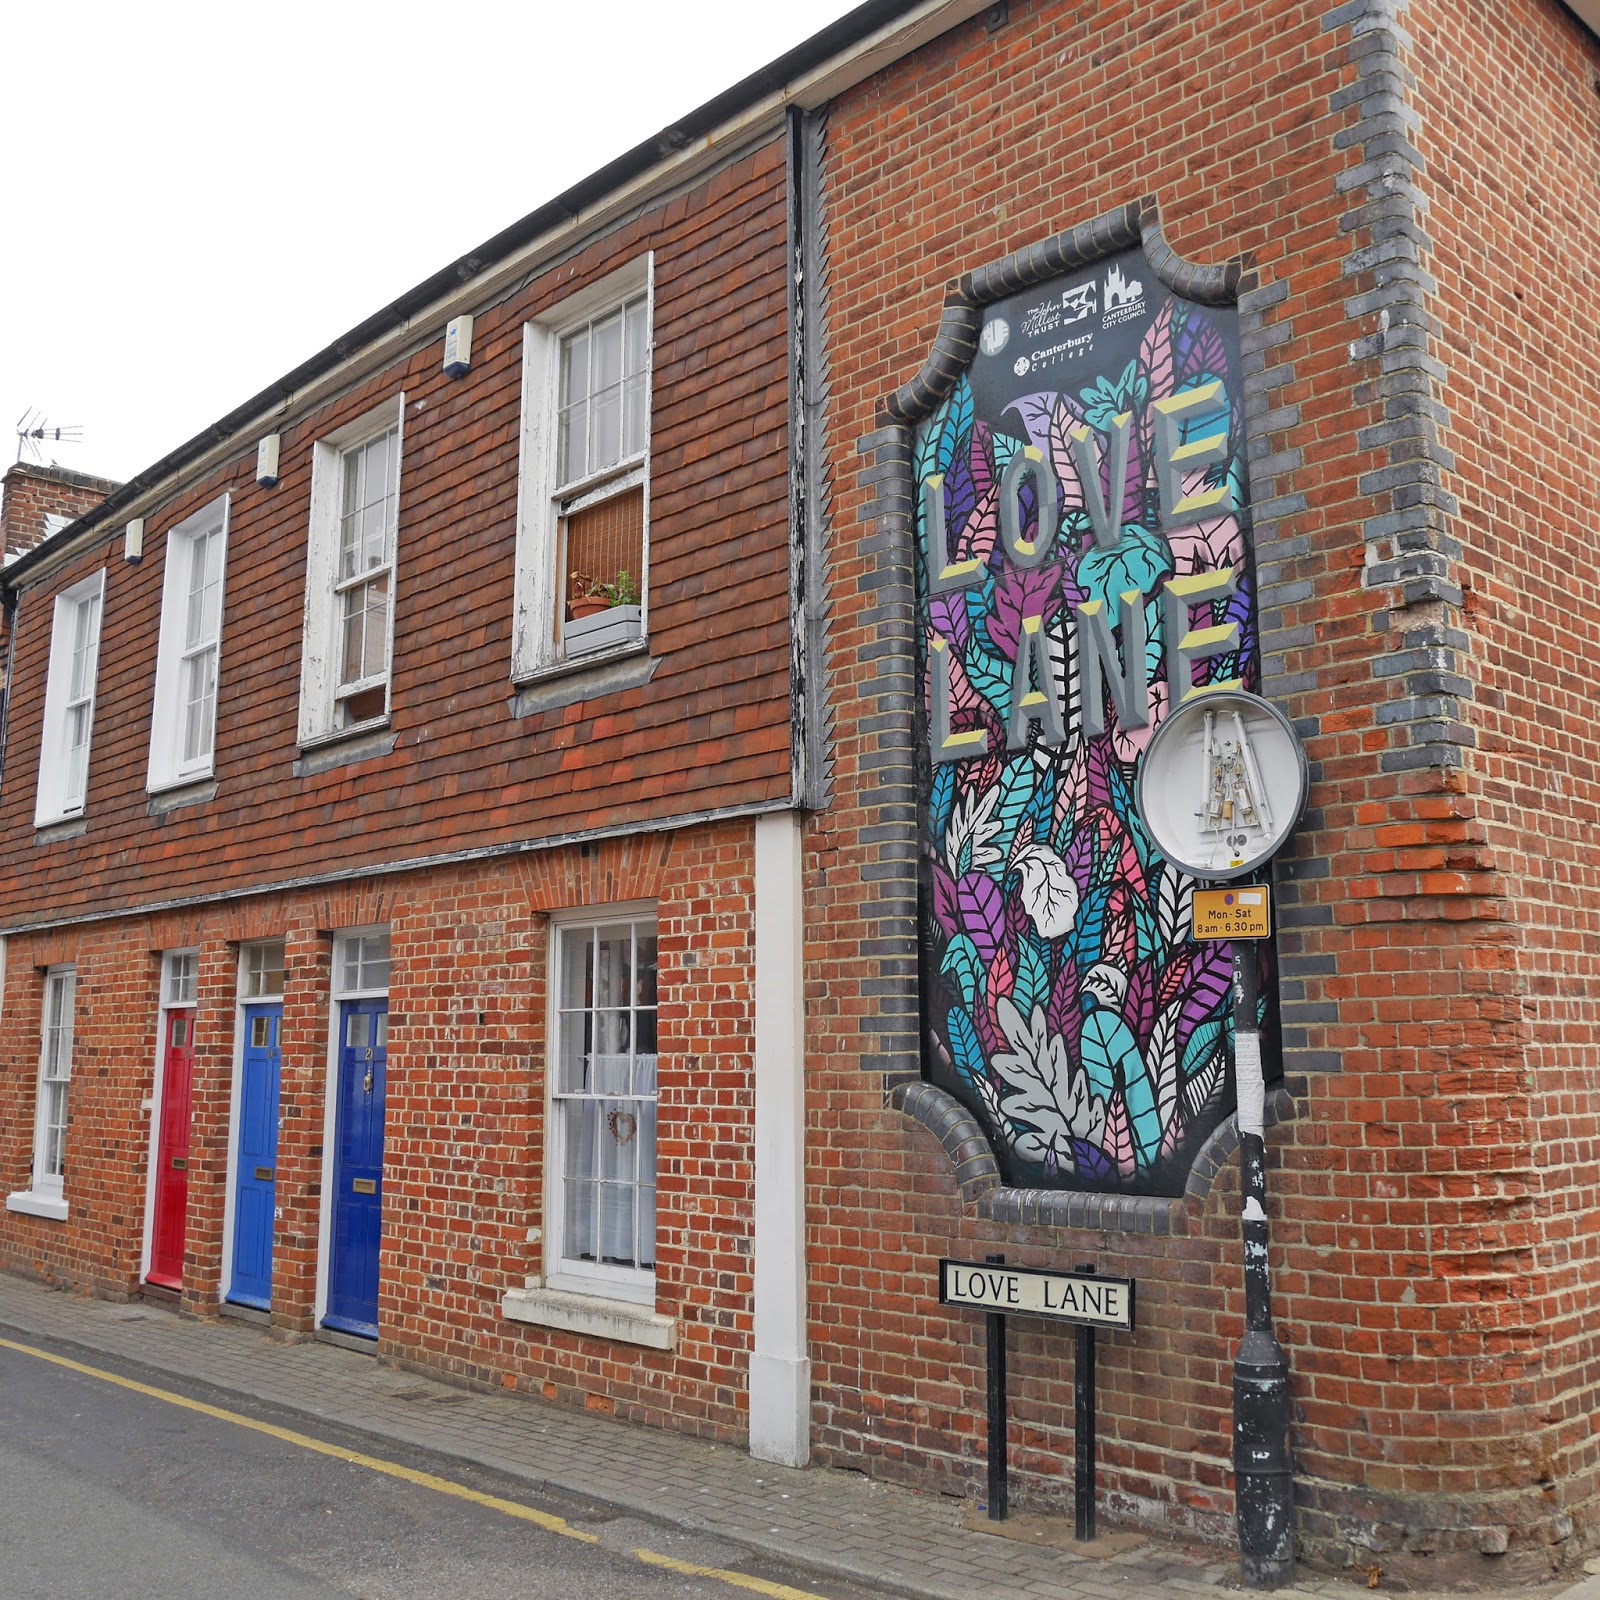 Love Lane street art in Canterbury, Kent